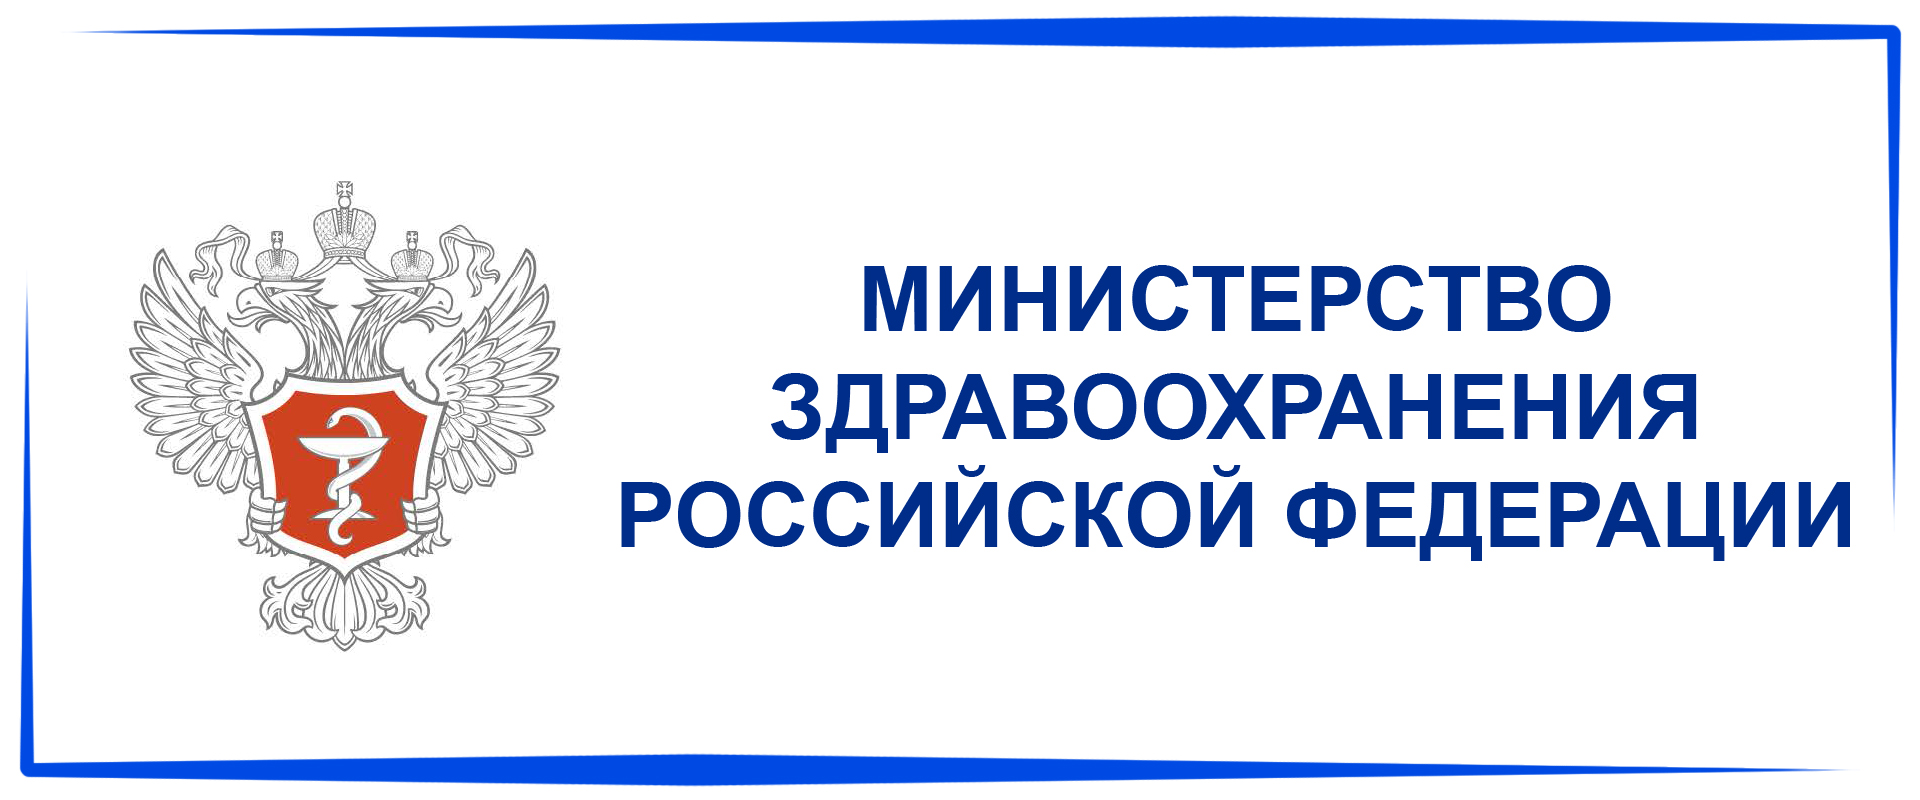 министерство здравоохранения российской федерации